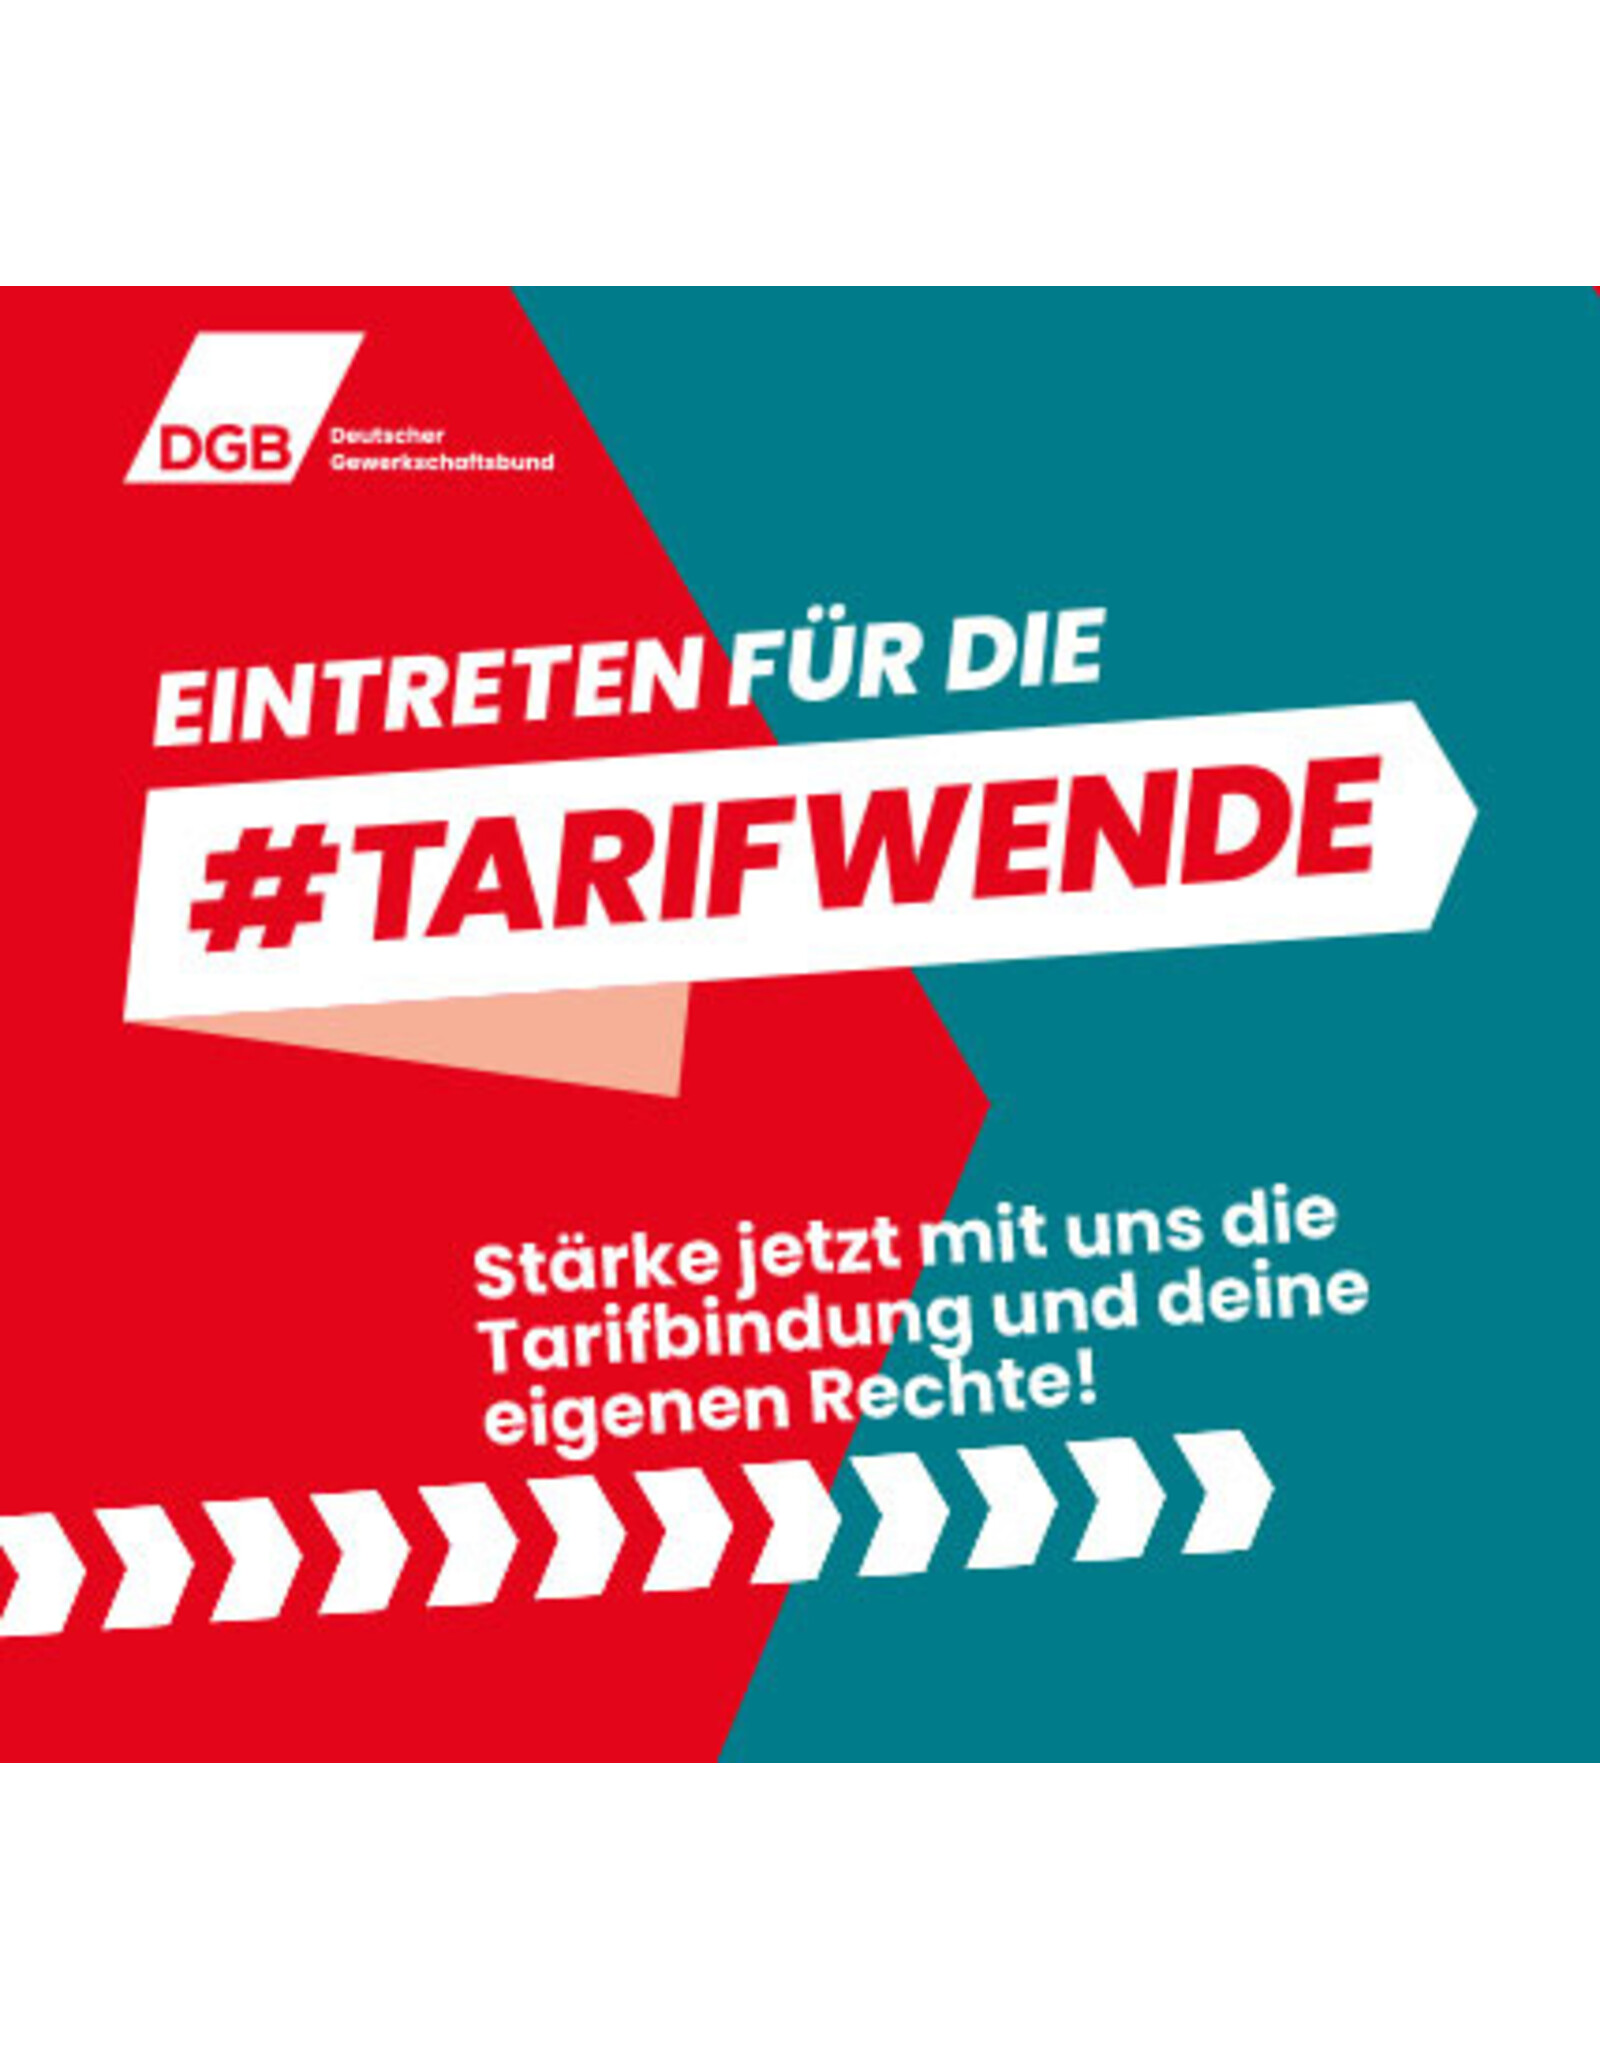 Tarifwende Flyer: Eintreten für die Tarifwende - zentraler Kampagnenflyer